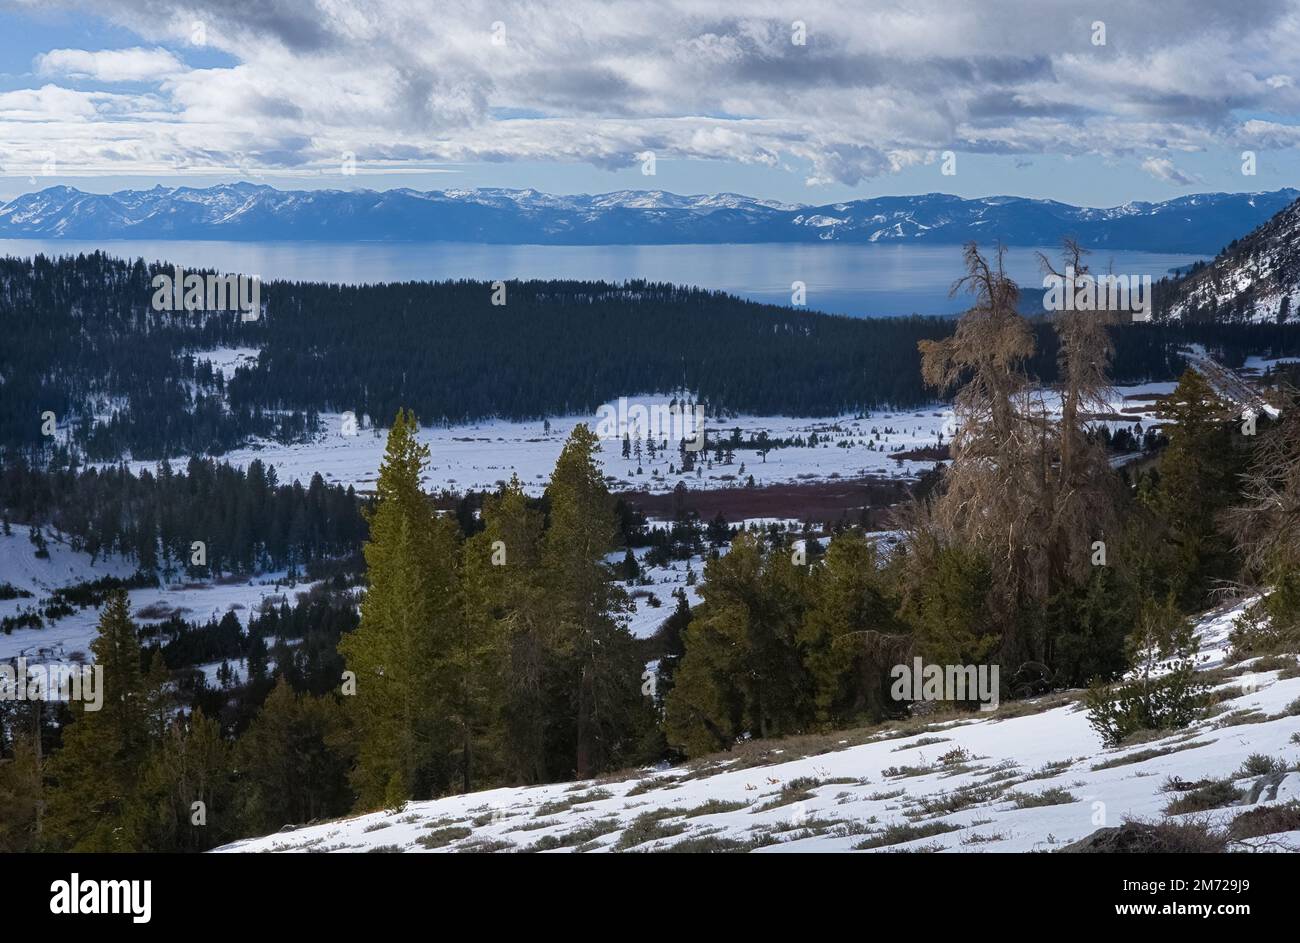 La vista invernale del lago Tahoe con la neve. Foto Stock